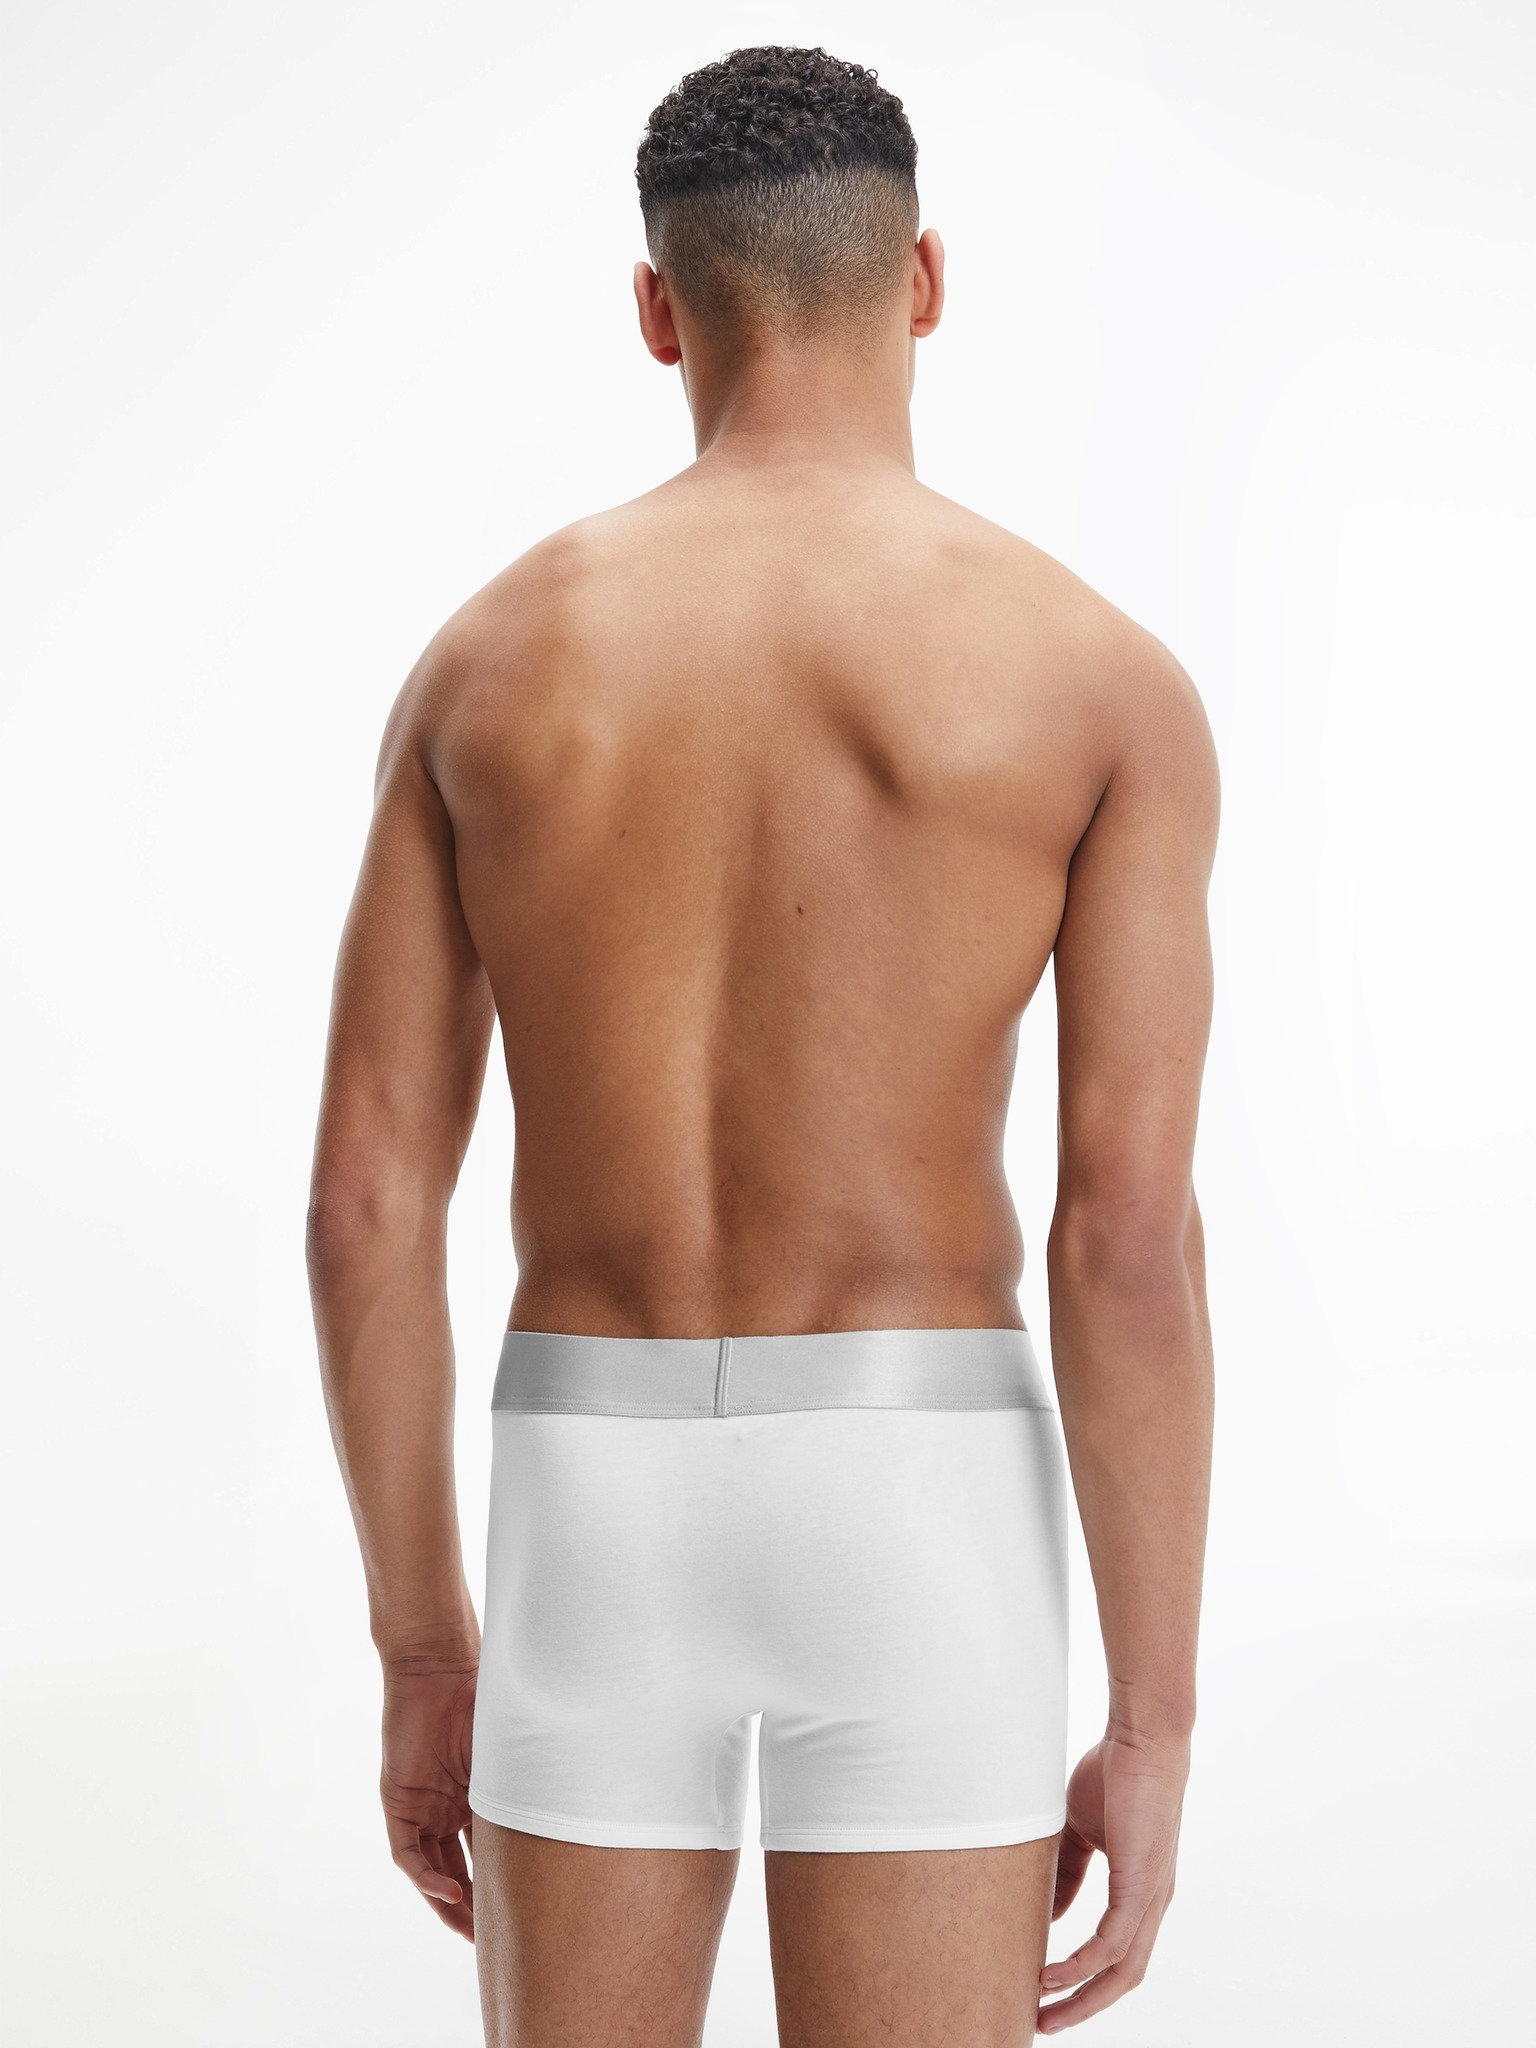 Calvin Klein Underwear Calvin Klein Boxer Brief 3 Piece Set in White